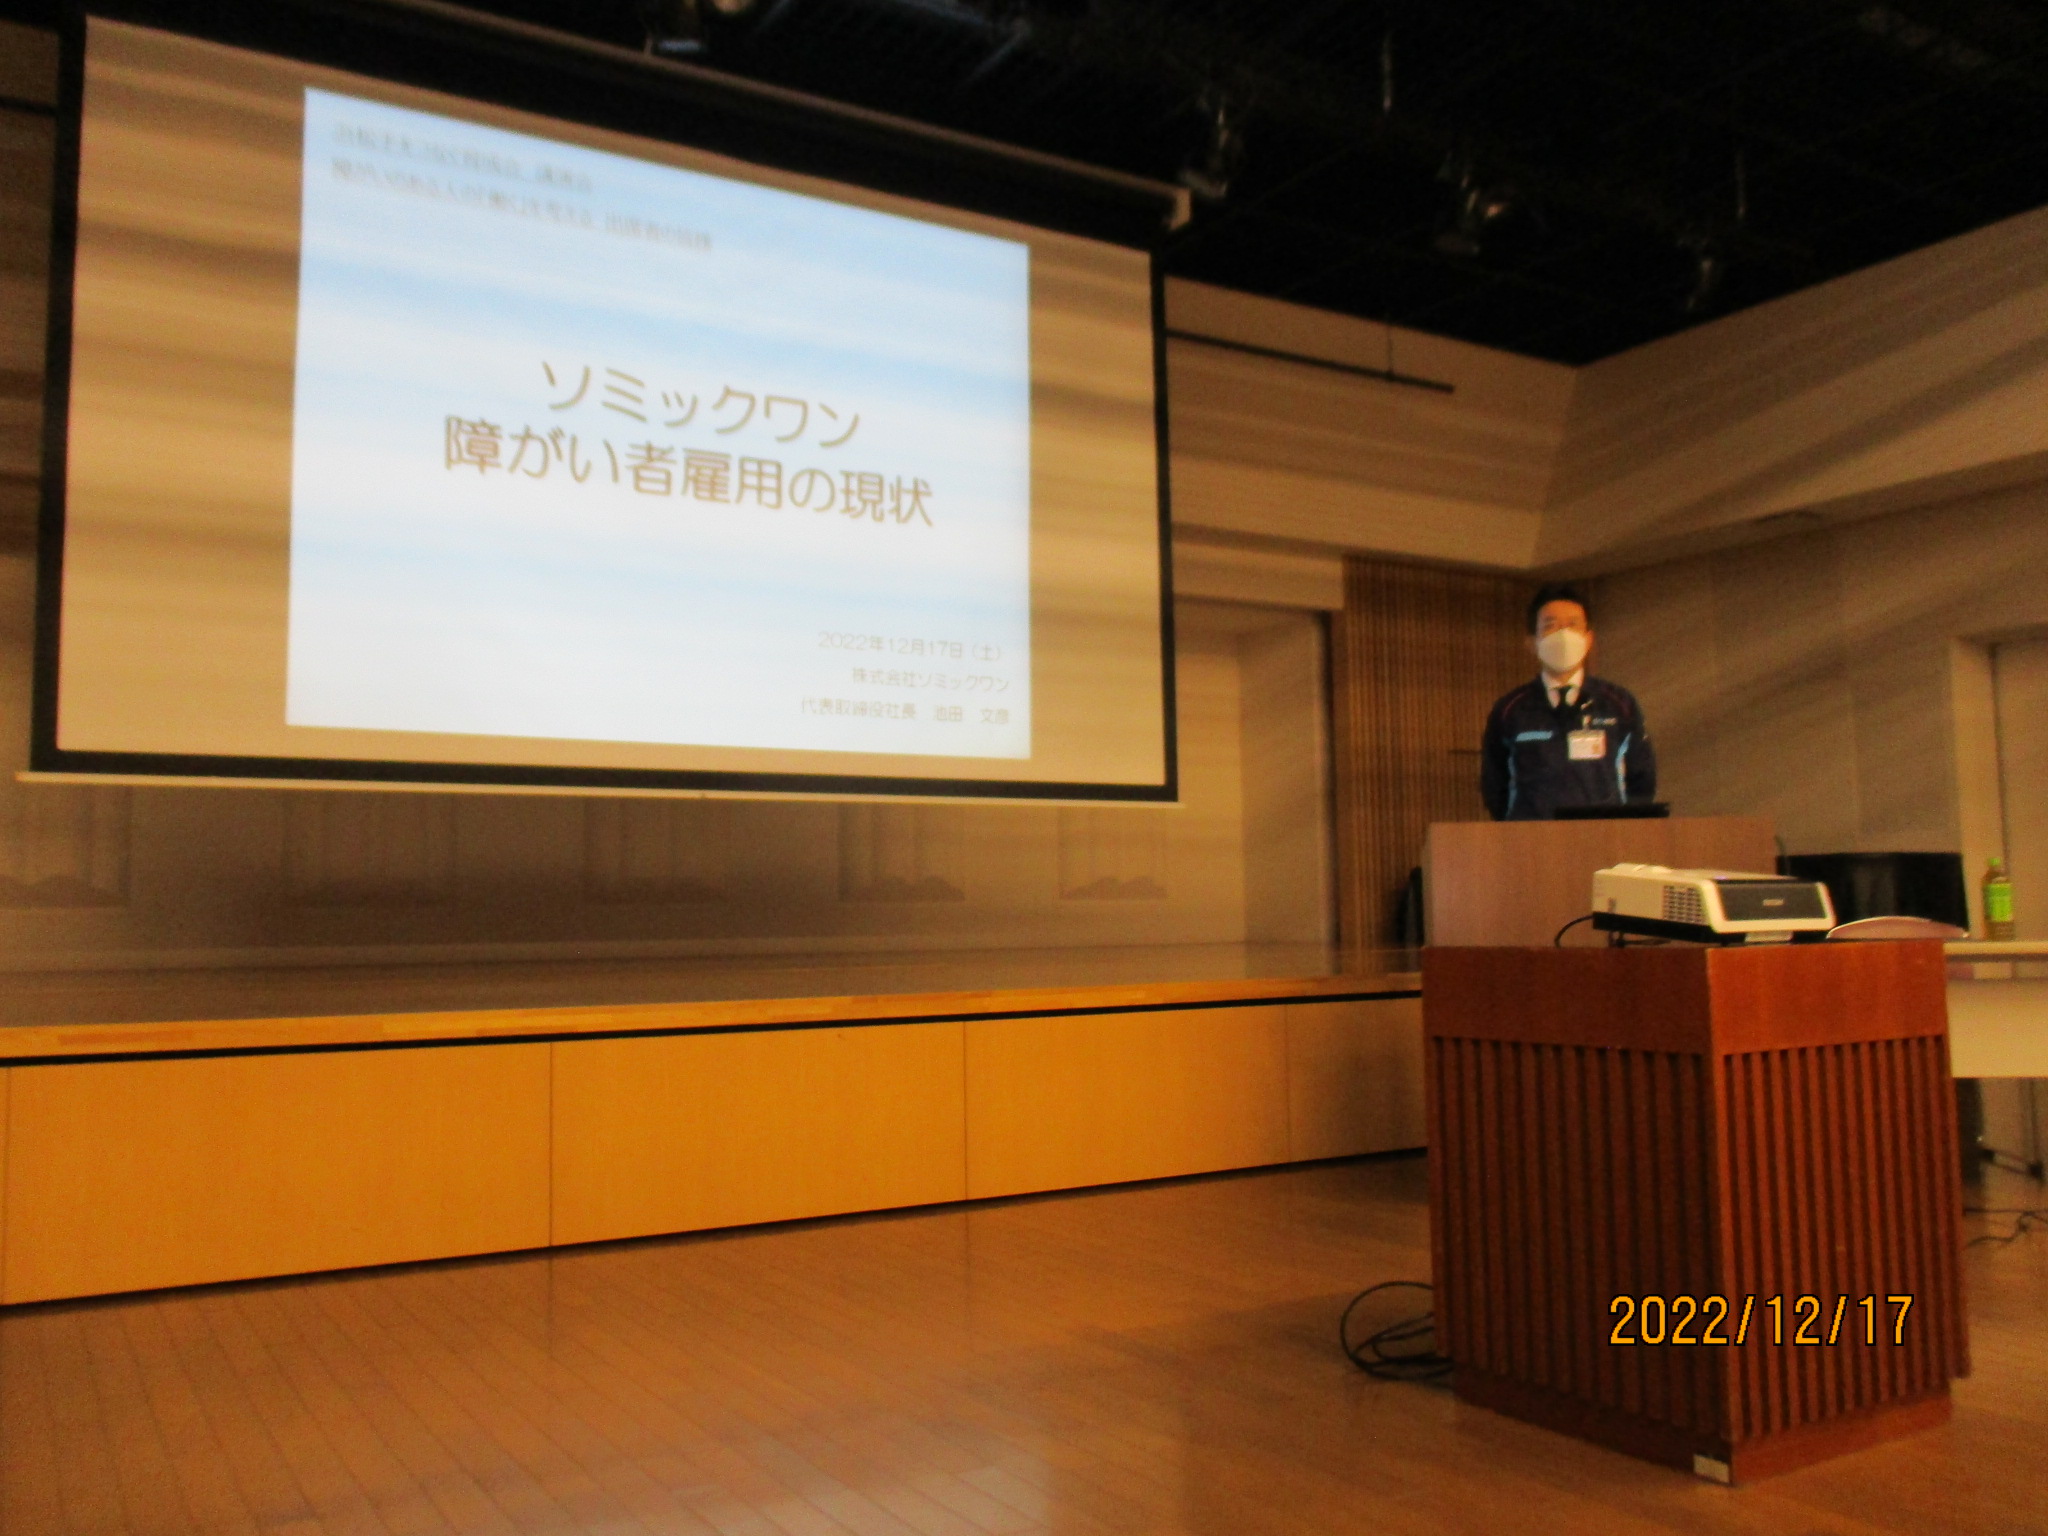 浜松市浜松手をつなぐ育成会が主催する講演会で、ソミックワンの池田社長が障がい者雇用について講演しました